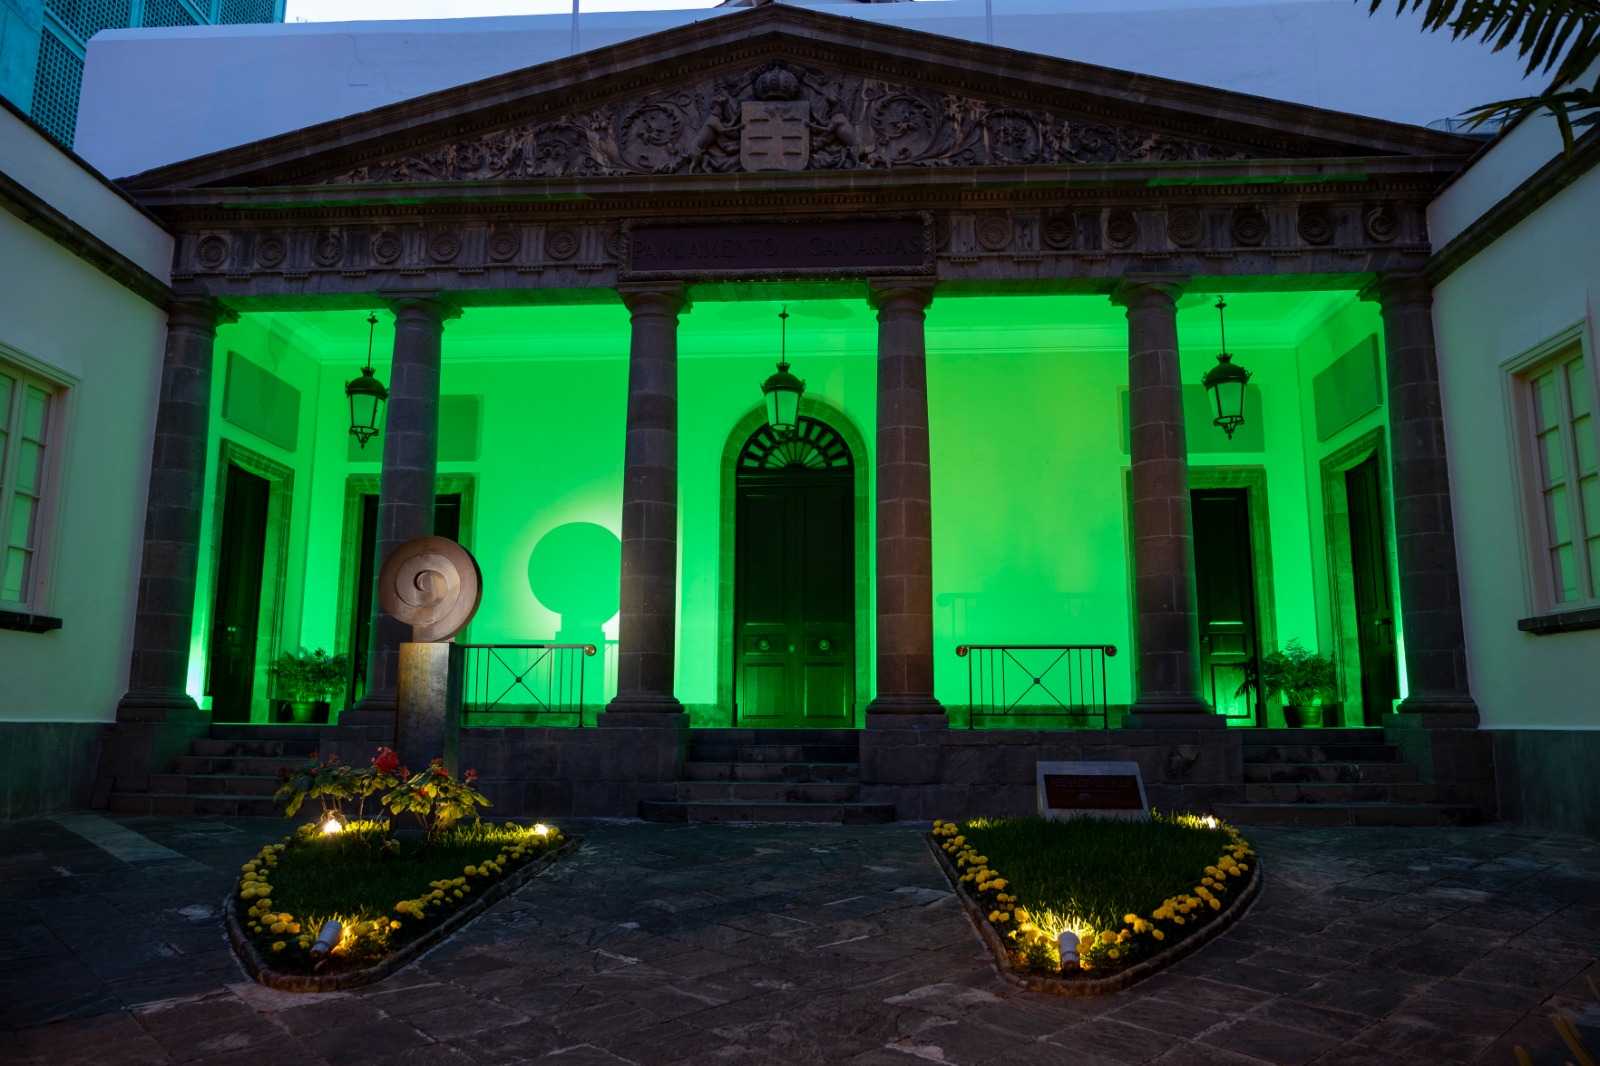 La fachada del Parlamento iluminada de color verde